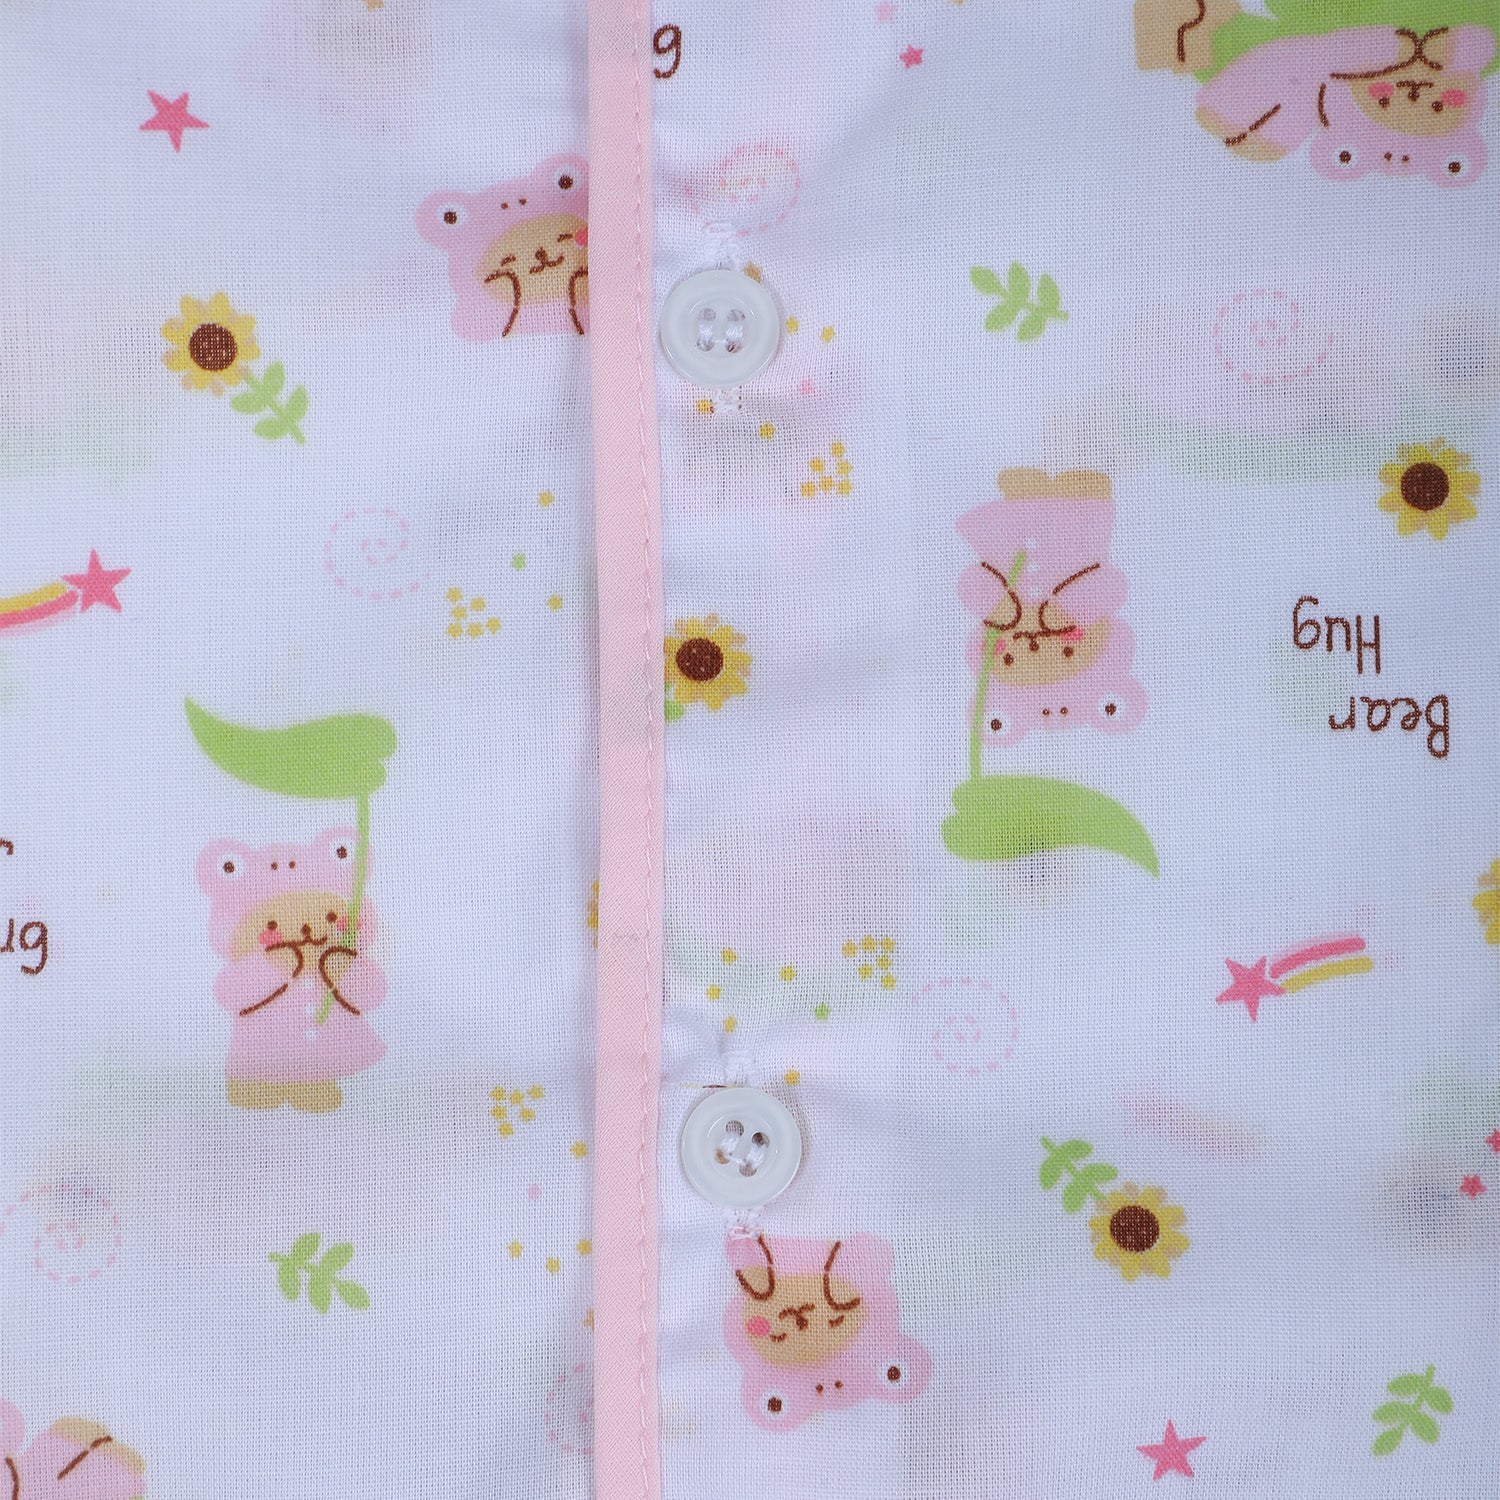 Baby Moo Bear Hug Half Sleeves Soft Cotton Jhabla And Shorts 2pcs Set - Pink - Baby Moo